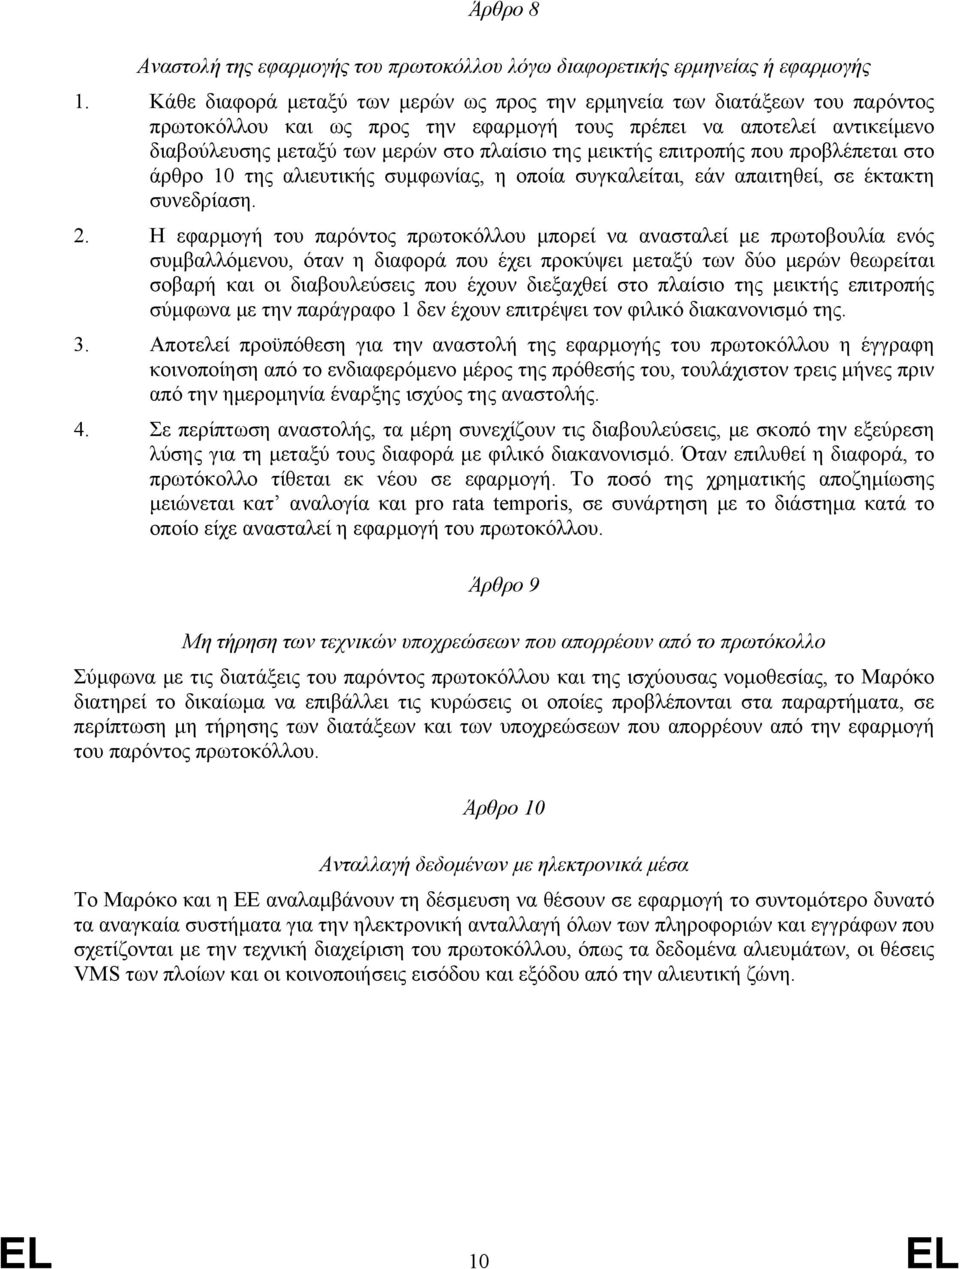 μεικτής επιτροπής που προβλέπεται στο άρθρο 10 της αλιευτικής συμφωνίας, η οποία συγκαλείται, εάν απαιτηθεί, σε έκτακτη συνεδρίαση. 2.